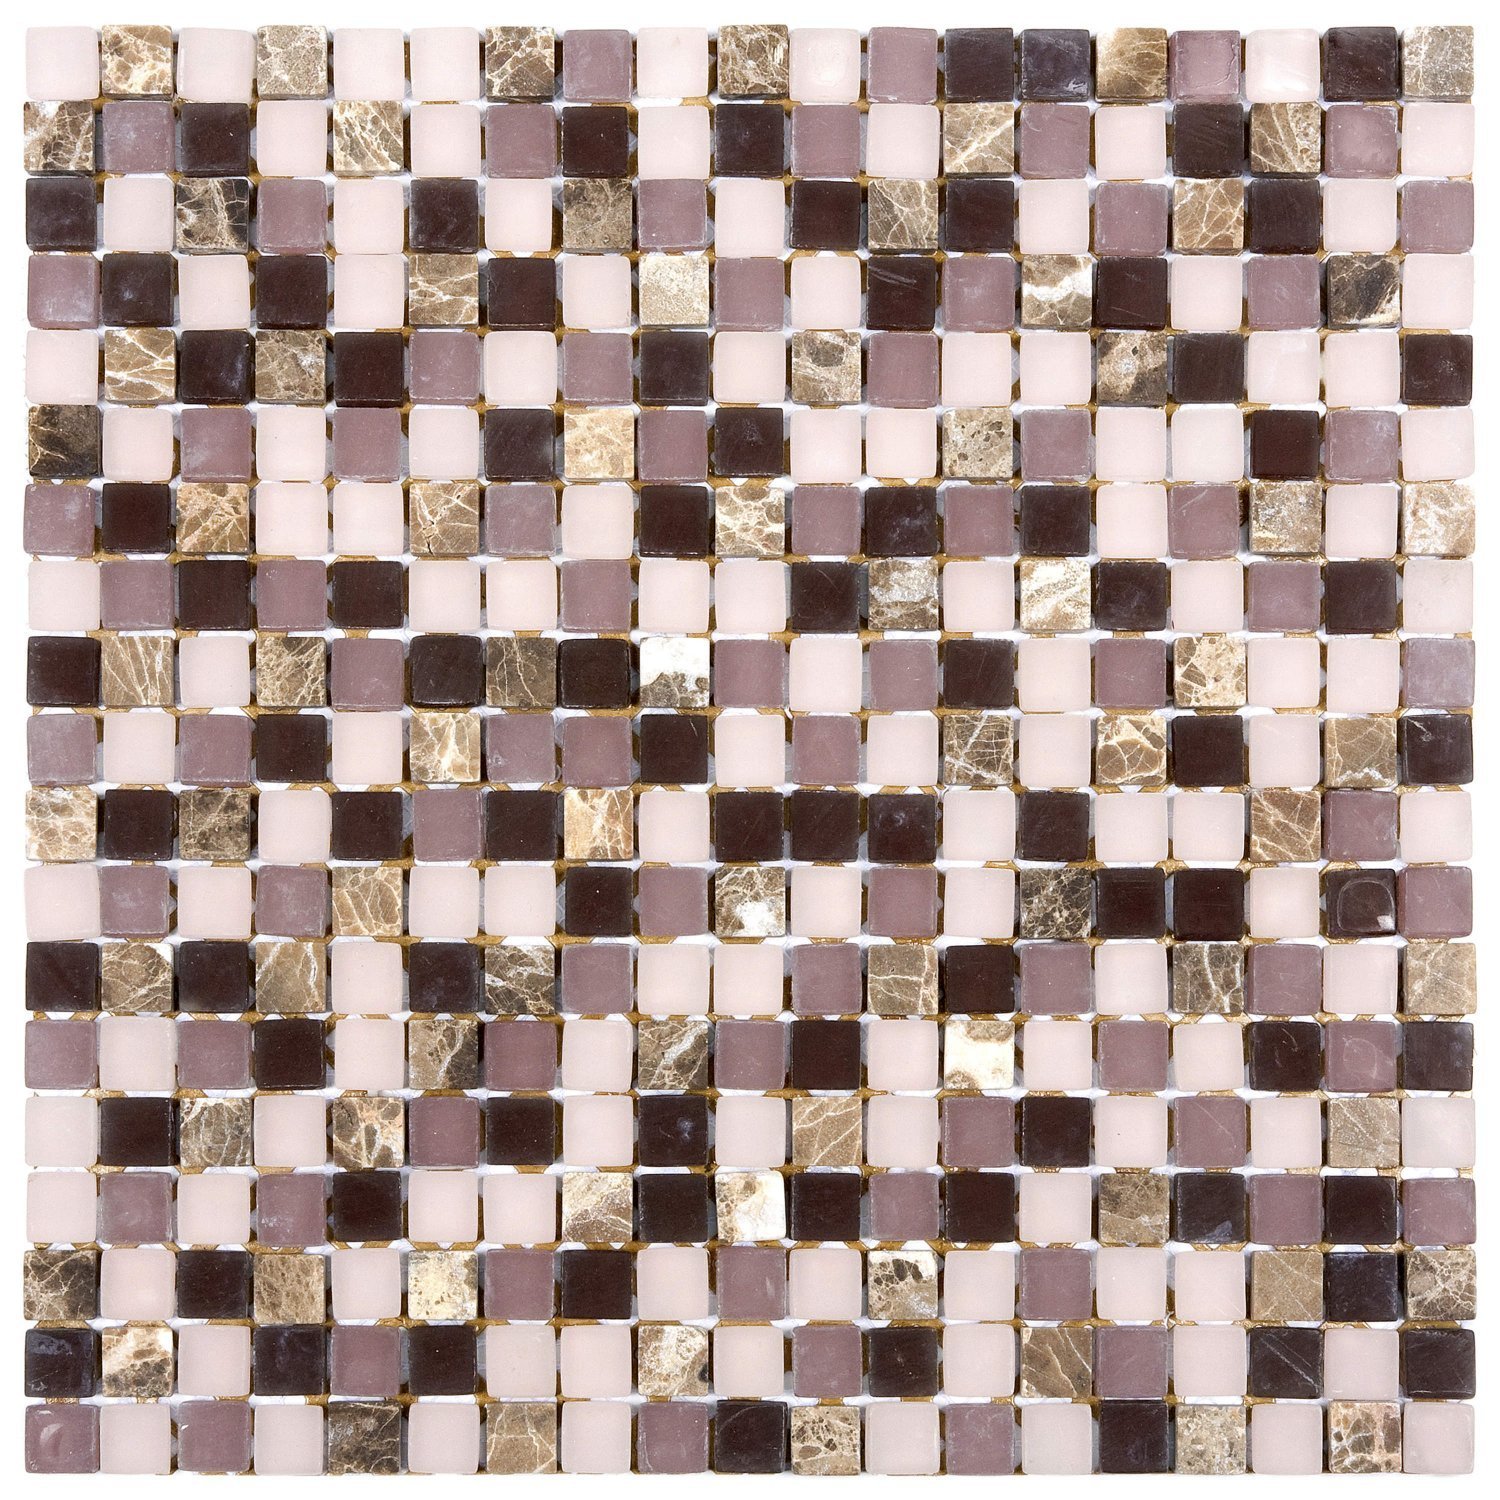 Pastilha Mesclada de Mármore e Vidro 31cm x 31cm Stone Glass Mosaic (Placas) - 1